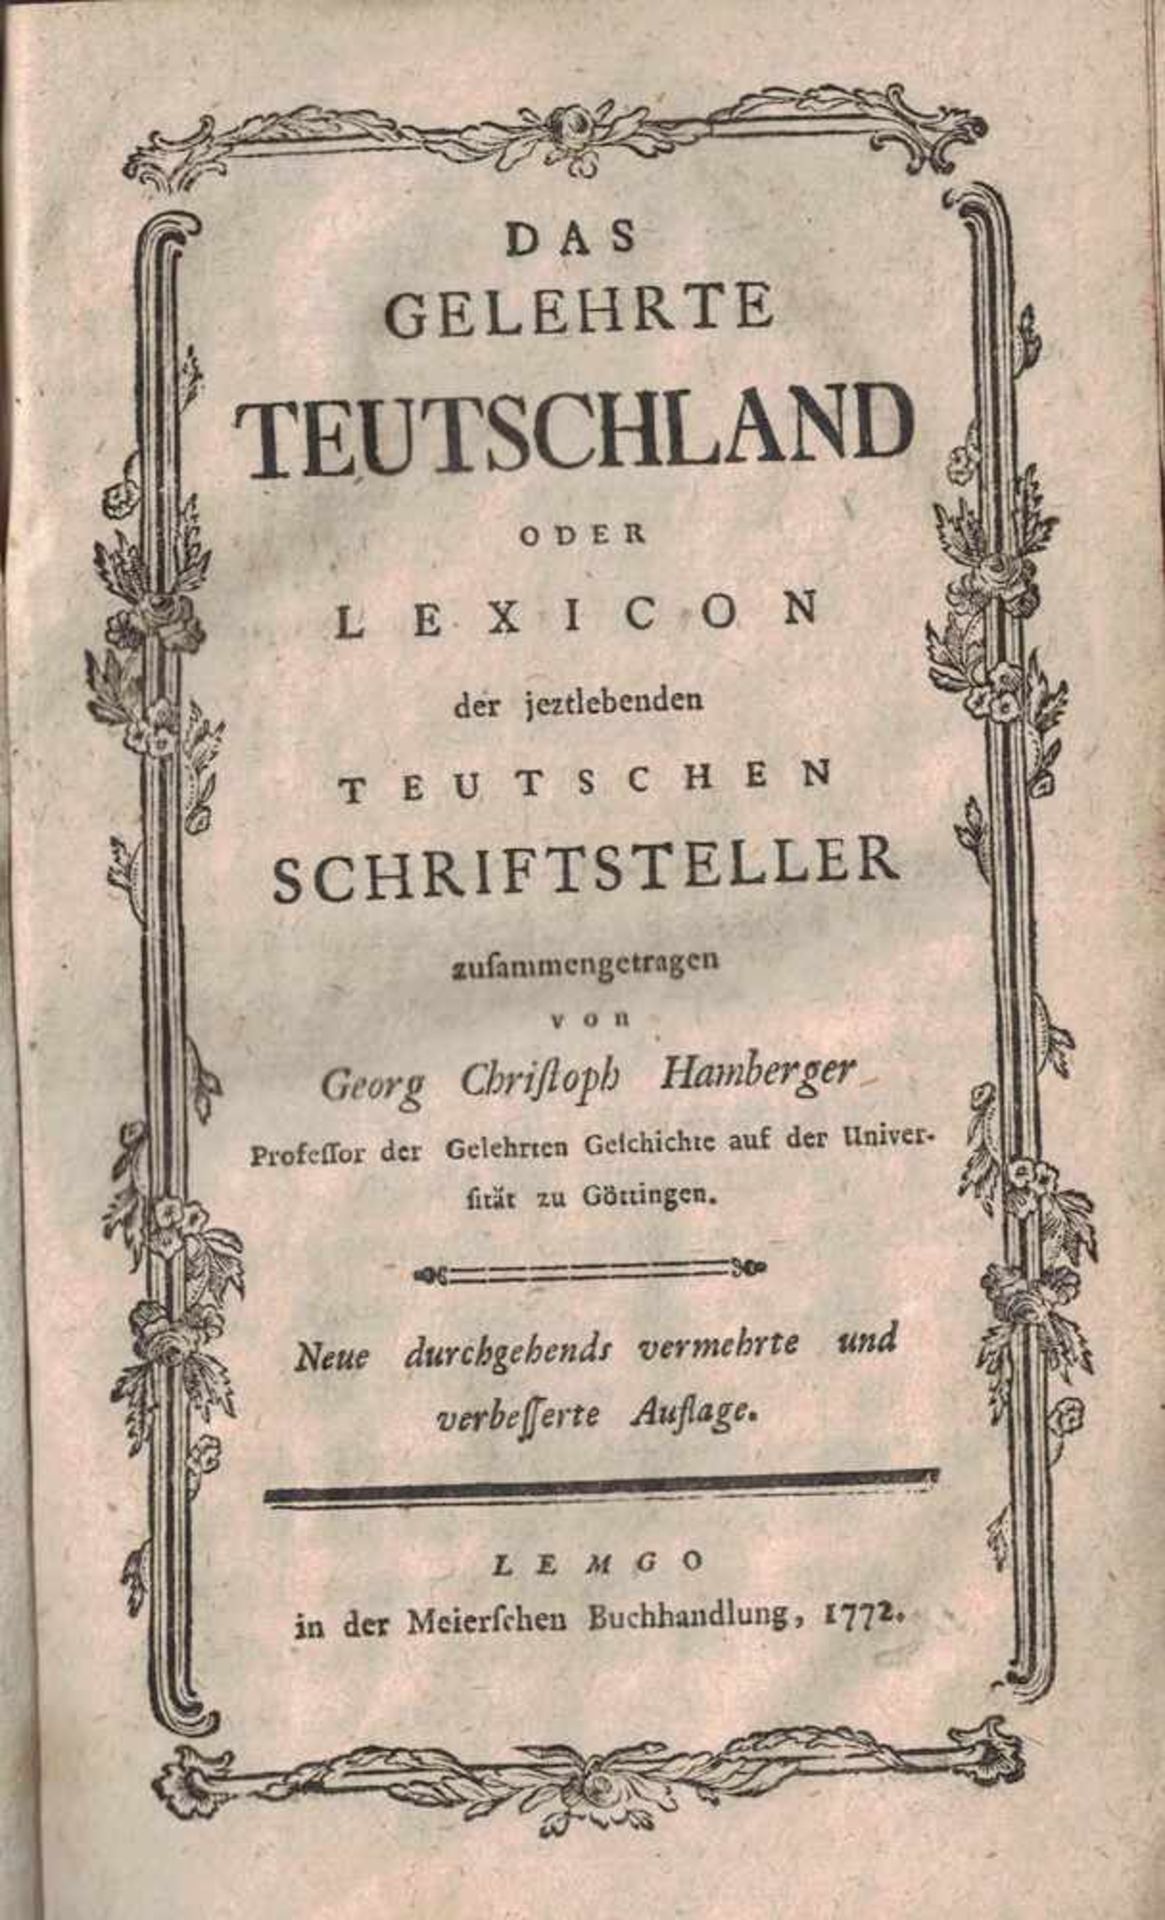 Das Gelehrte Teutschland oder Lexicon der jetzlebenden Teutschen Schriftsteller...Hamberger, Georg